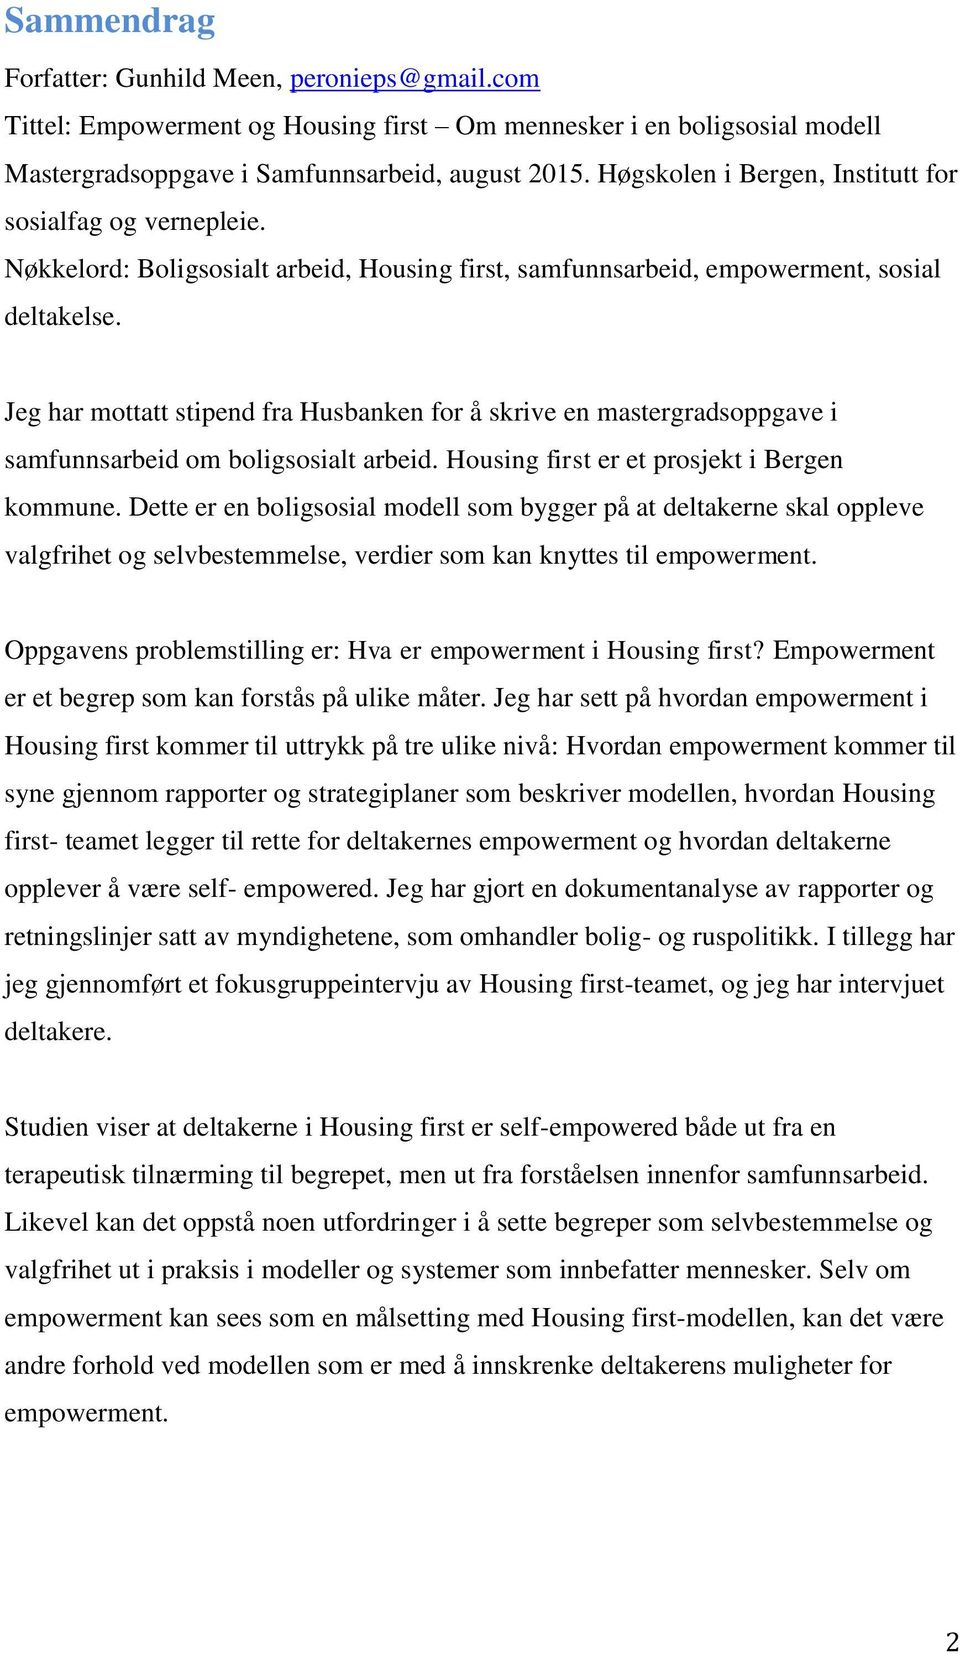 Jeg har mottatt stipend fra Husbanken for å skrive en mastergradsoppgave i samfunnsarbeid om boligsosialt arbeid. Housing first er et prosjekt i Bergen kommune.